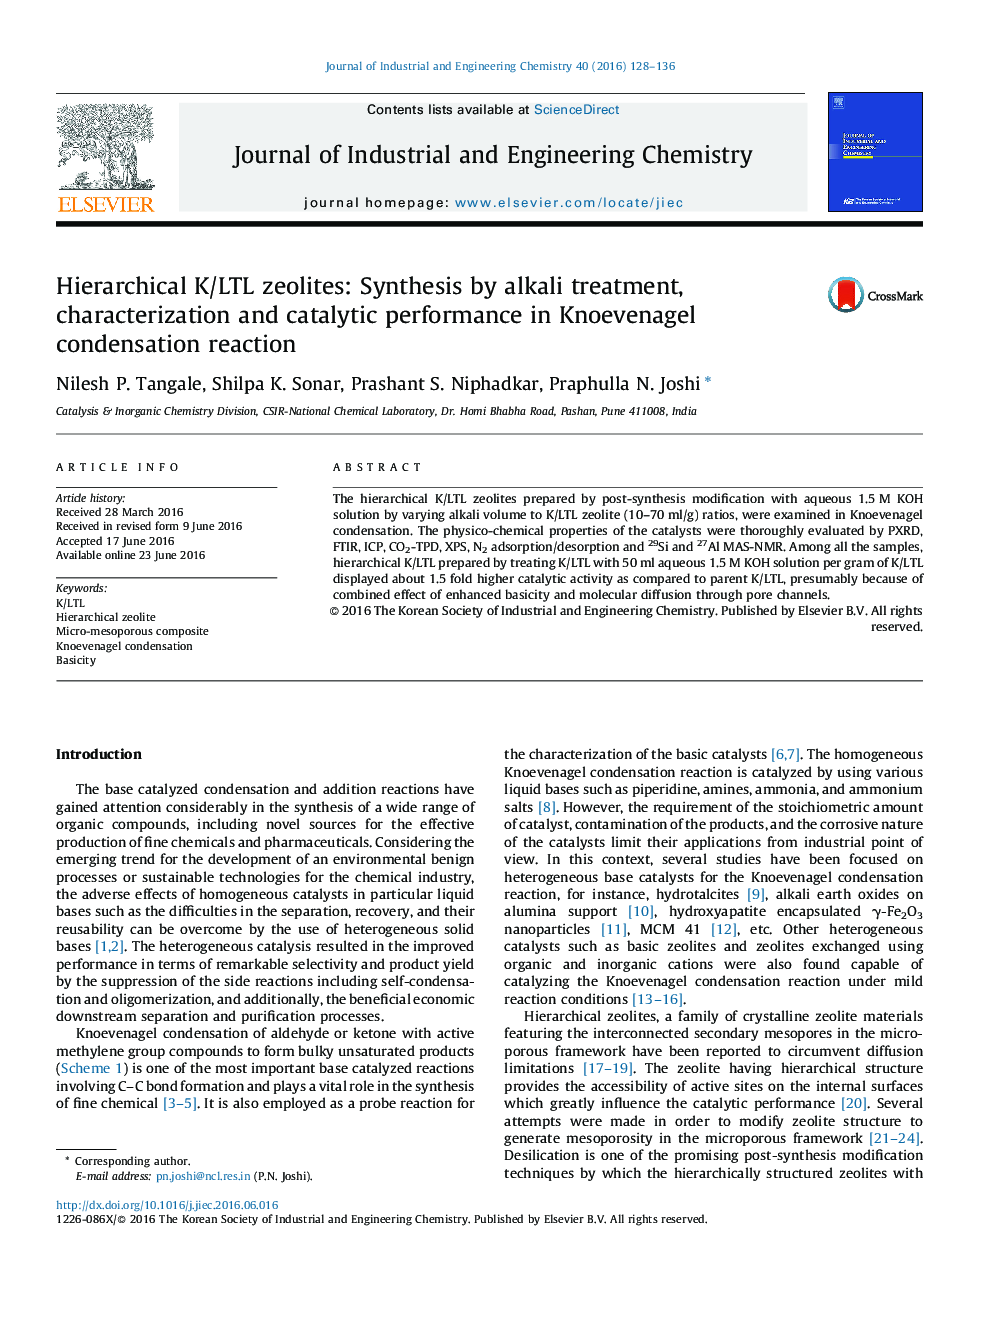 زئولیت های K/LTL سلسله مراتبی: سنتز توسط تصفیه قلیایی، خصوصیات و عملکرد کاتالیزوری در واکنش تراکمی Knoevenagel